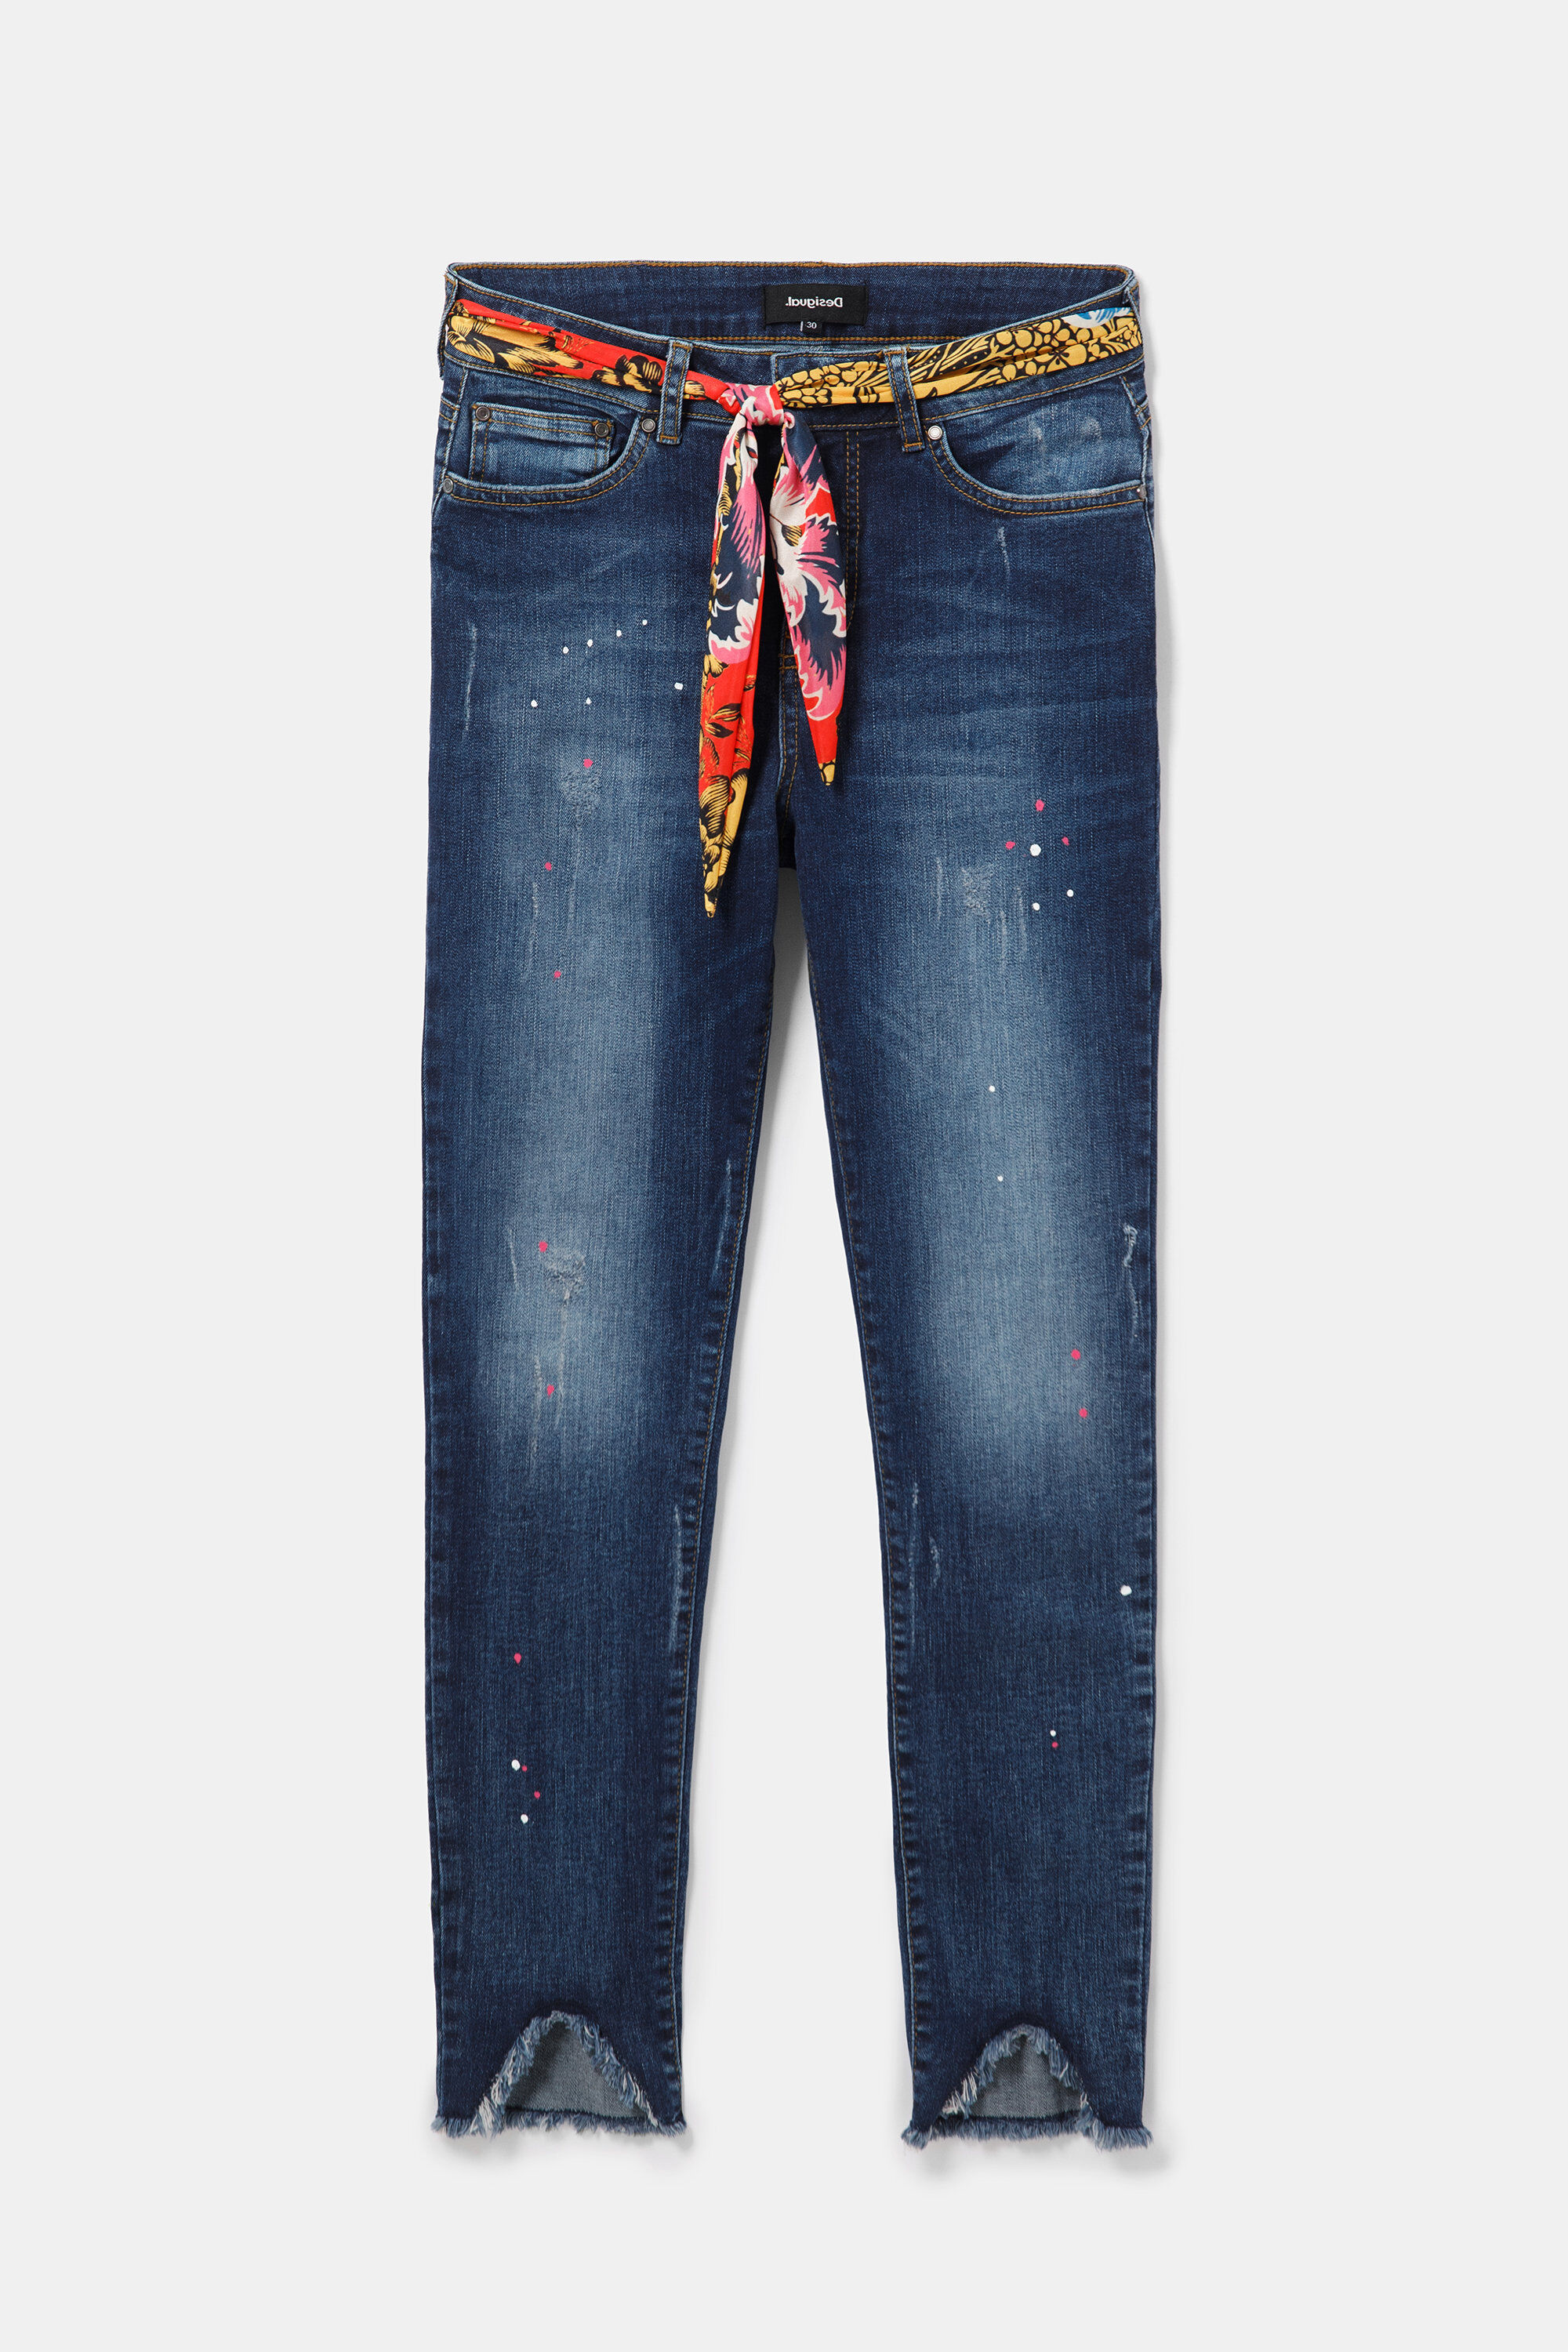 desigual jeans